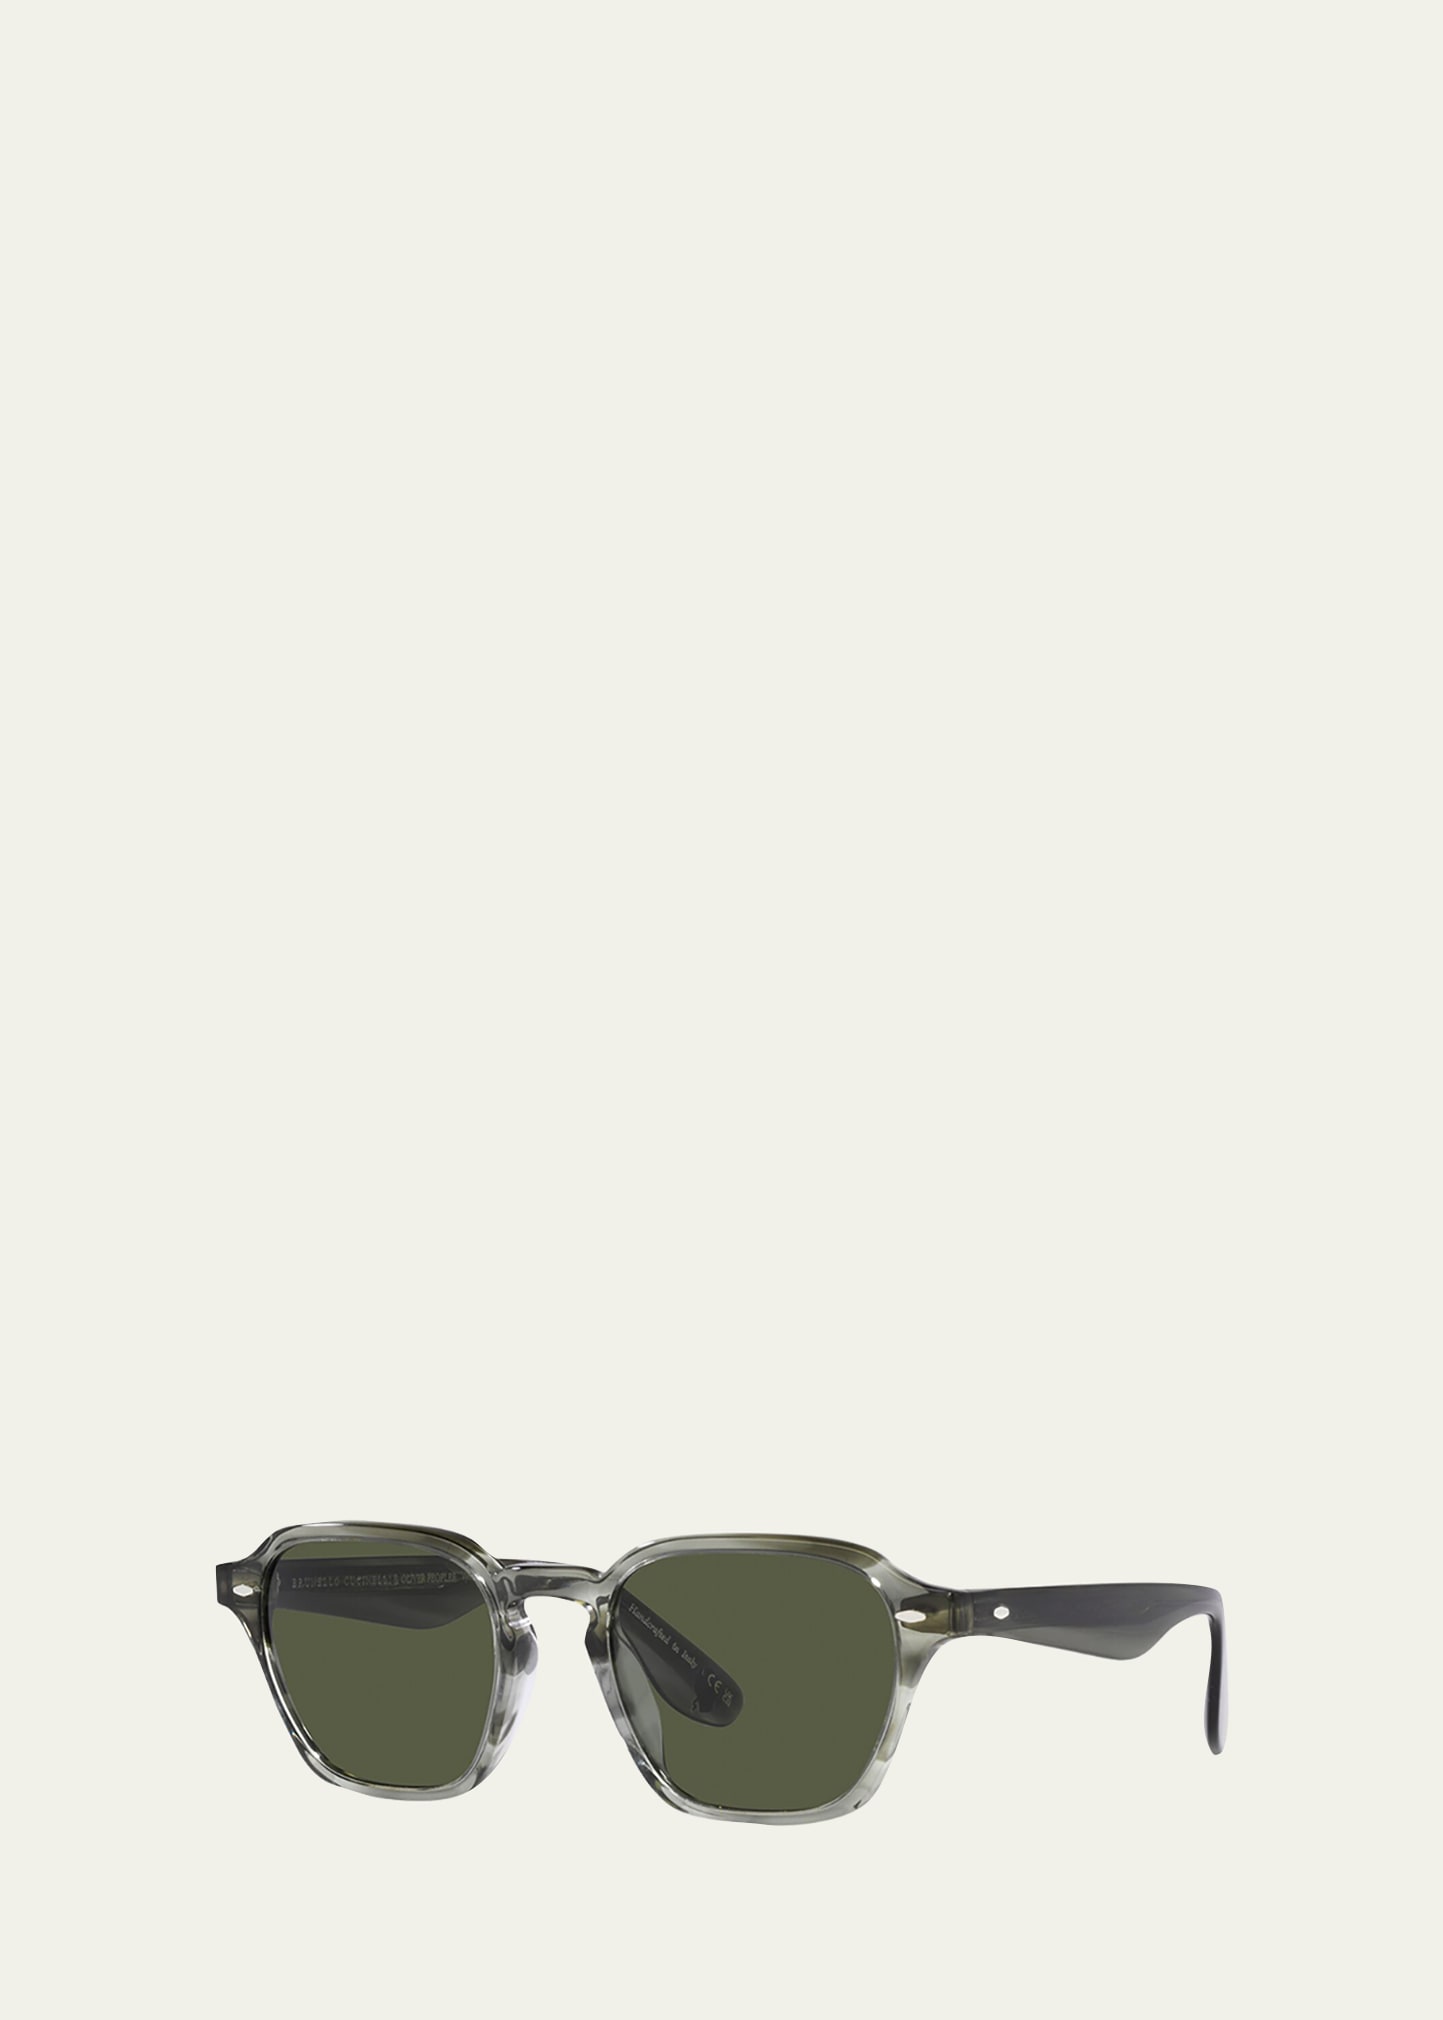 x Brunello Cucinelli Men's Griffo Keyhole Bridge Sunglasses